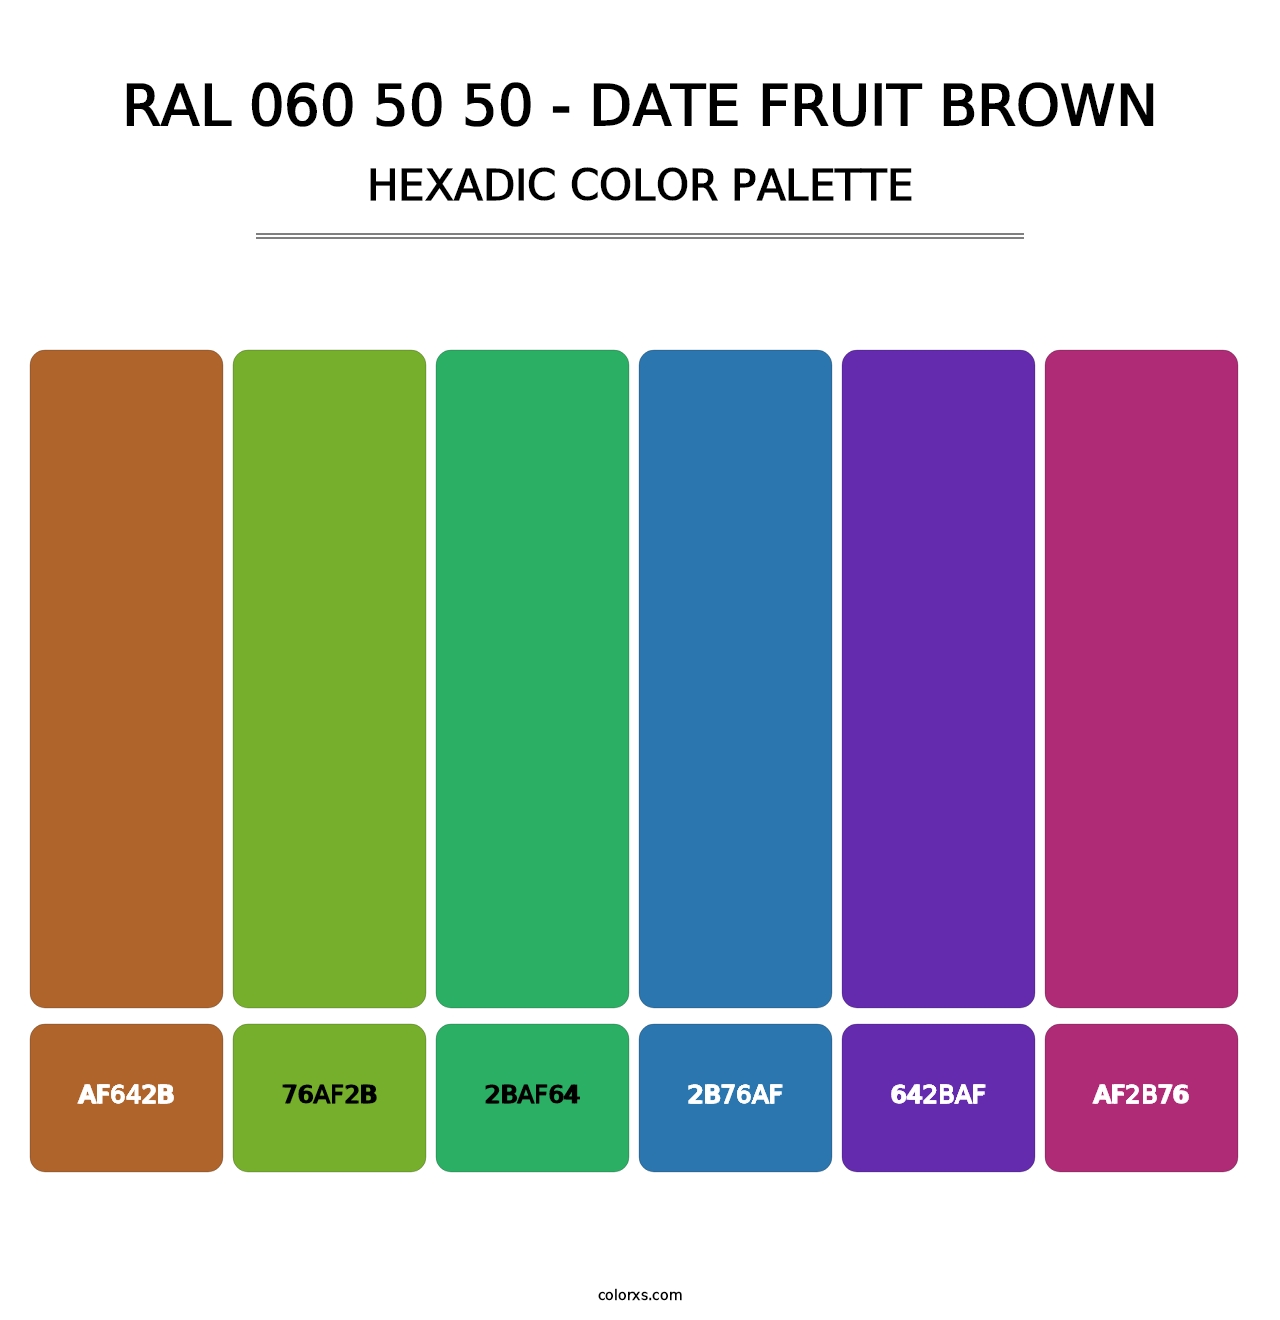 RAL 060 50 50 - Date Fruit Brown - Hexadic Color Palette